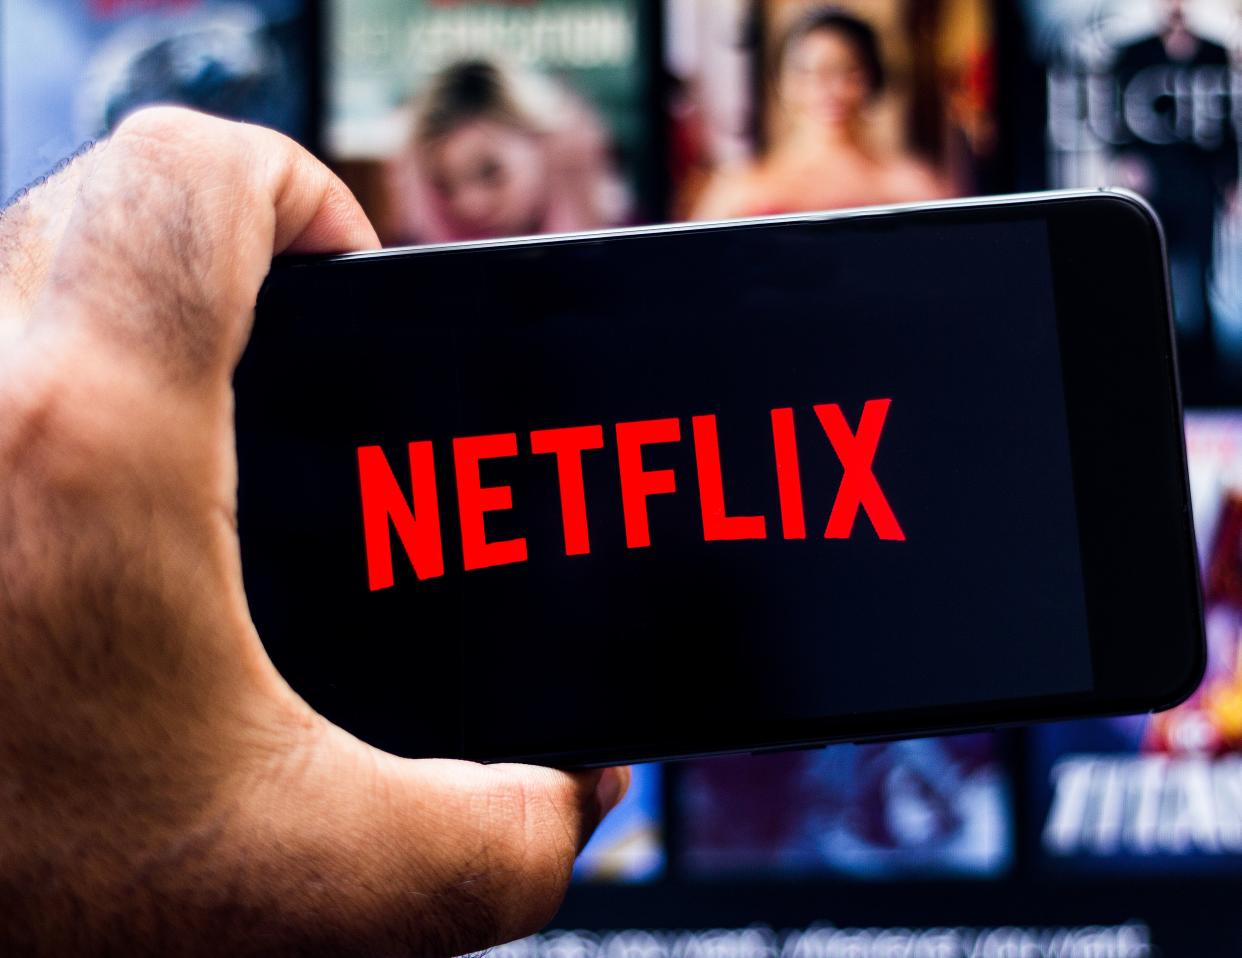 Netflix anunció una función que descargará contenido recomendado por al compañía al teléfono en forma automática